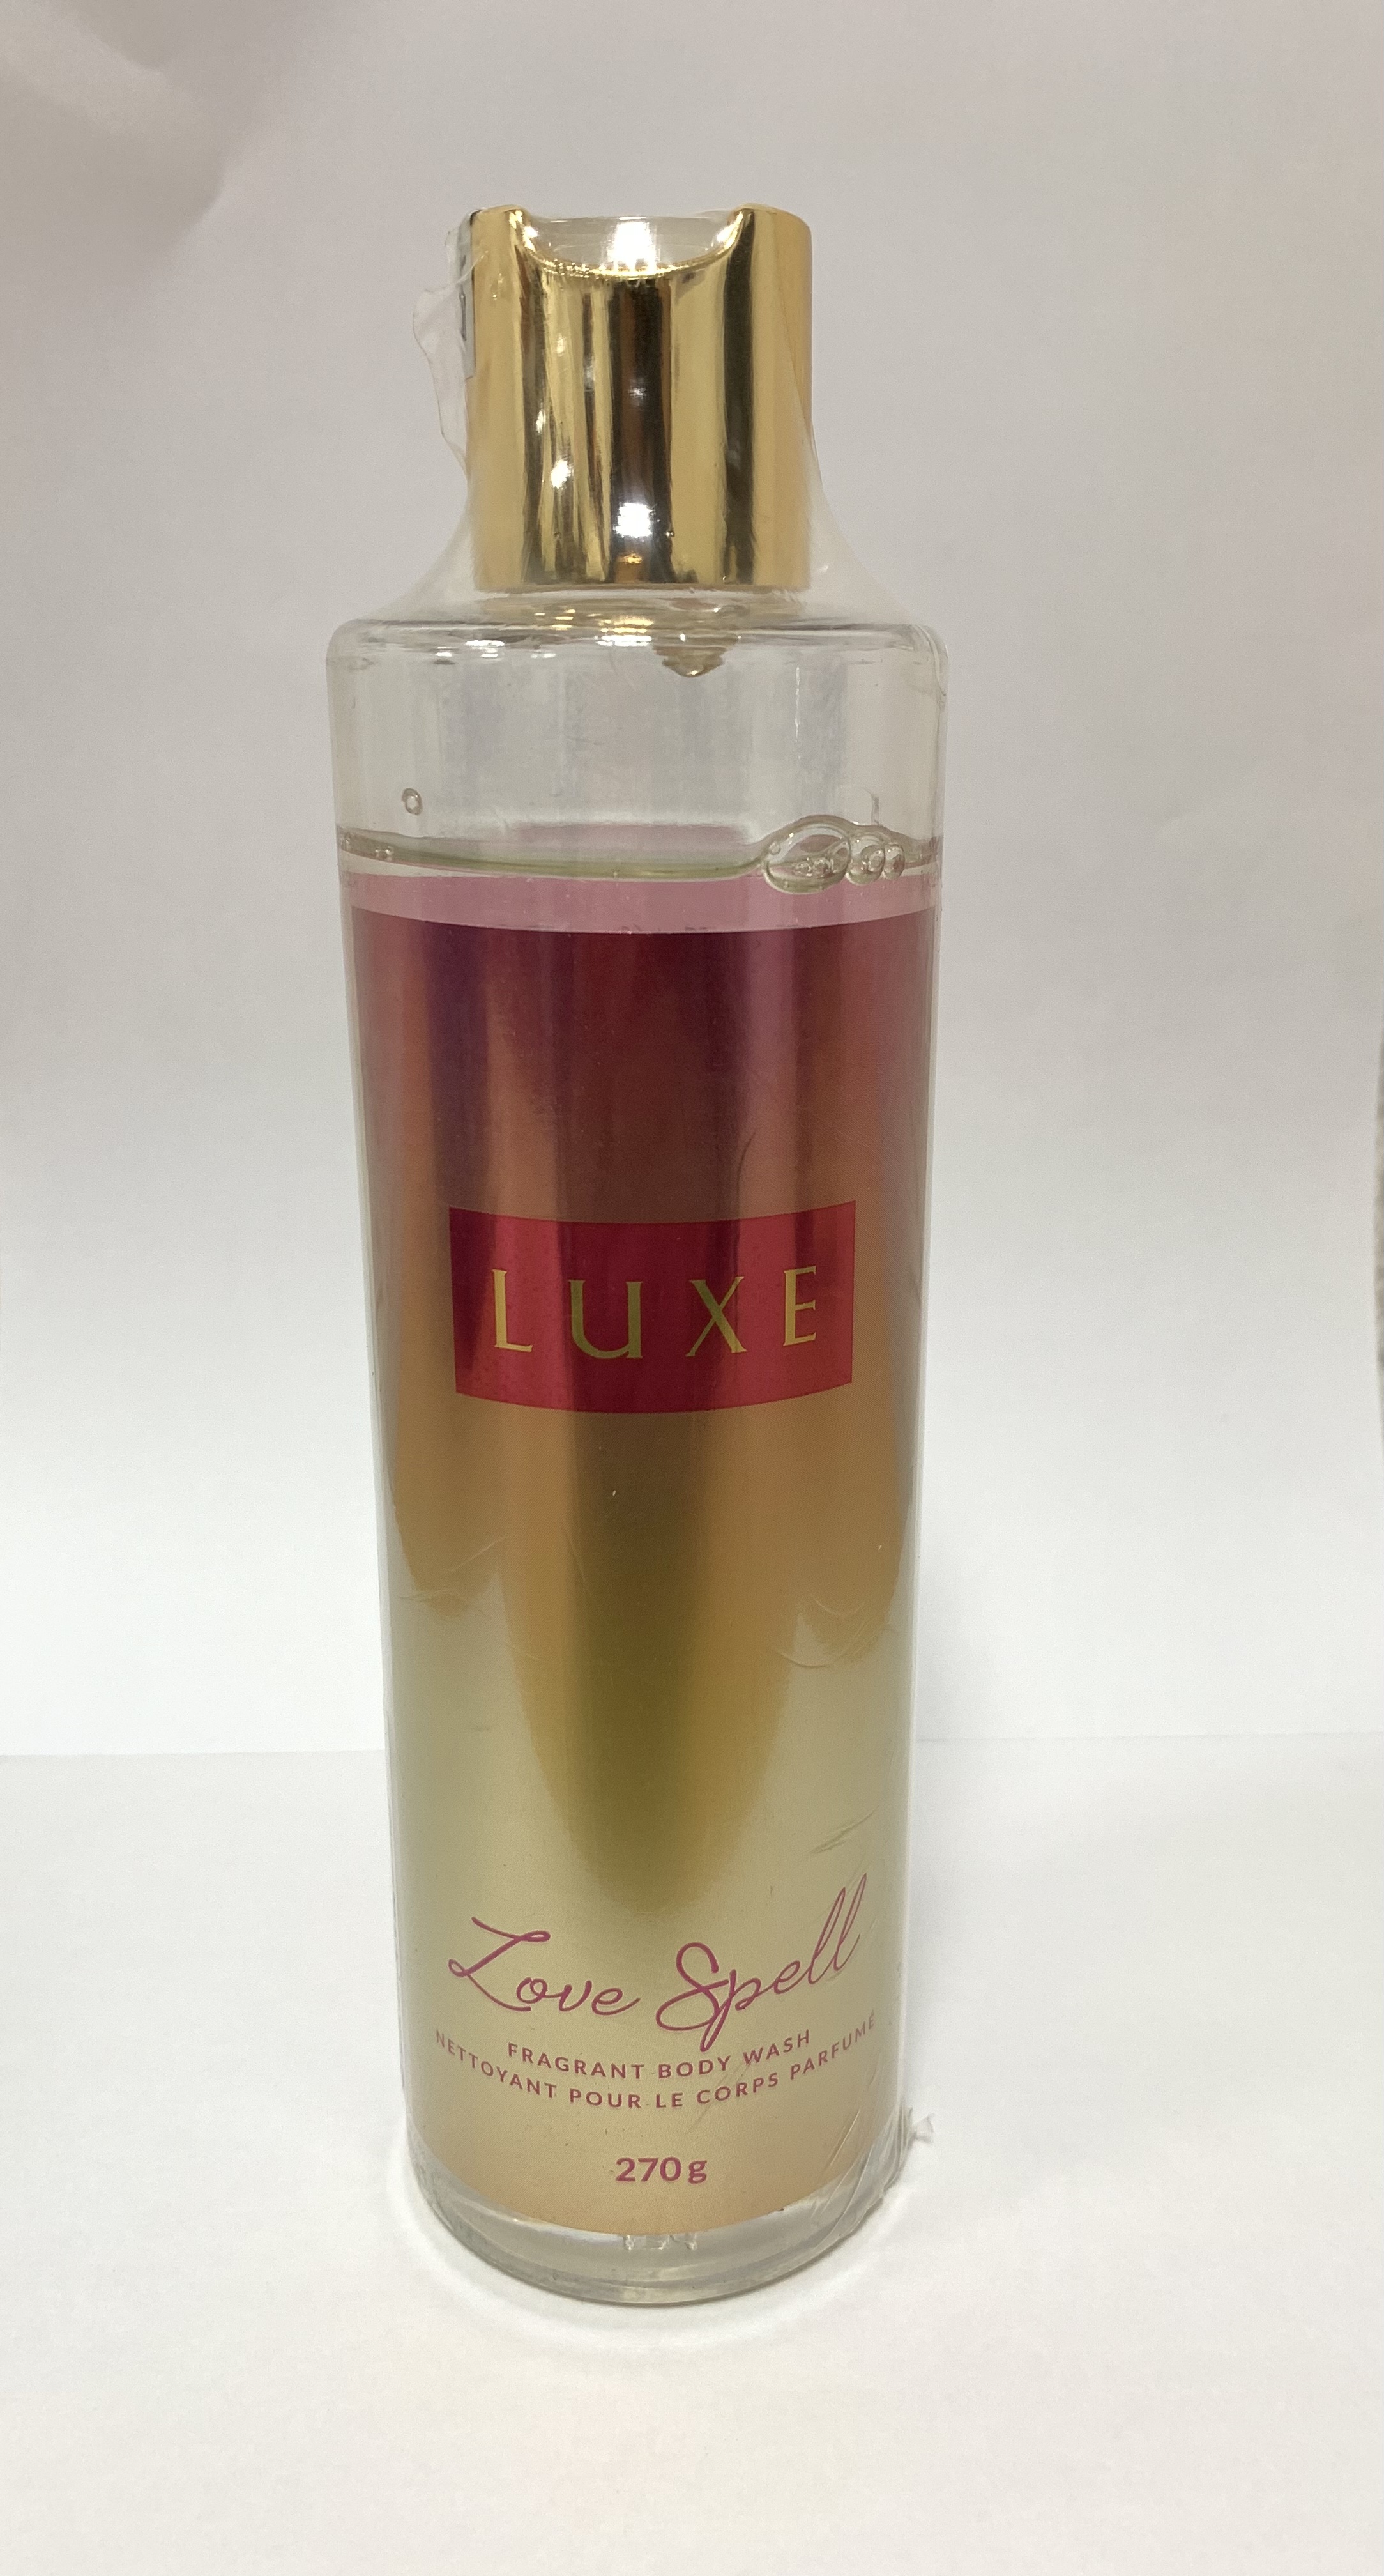 Sữa tắm hương nước hoa cao cấp độc quyền Damode luxe 265ml dành cho nữ